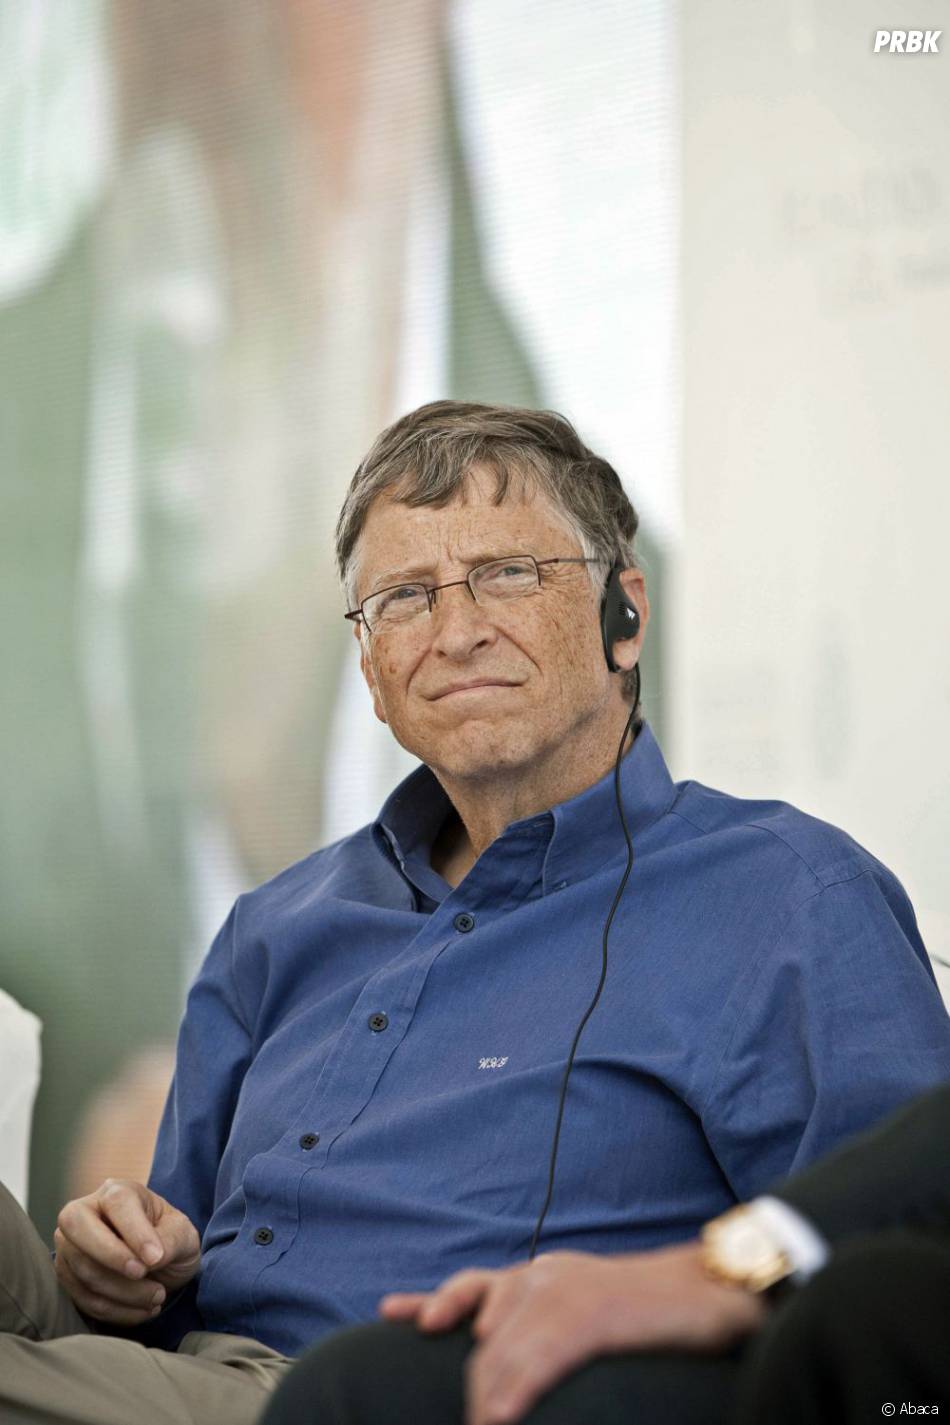 Bill Gates triste en parlant de son ancien rival